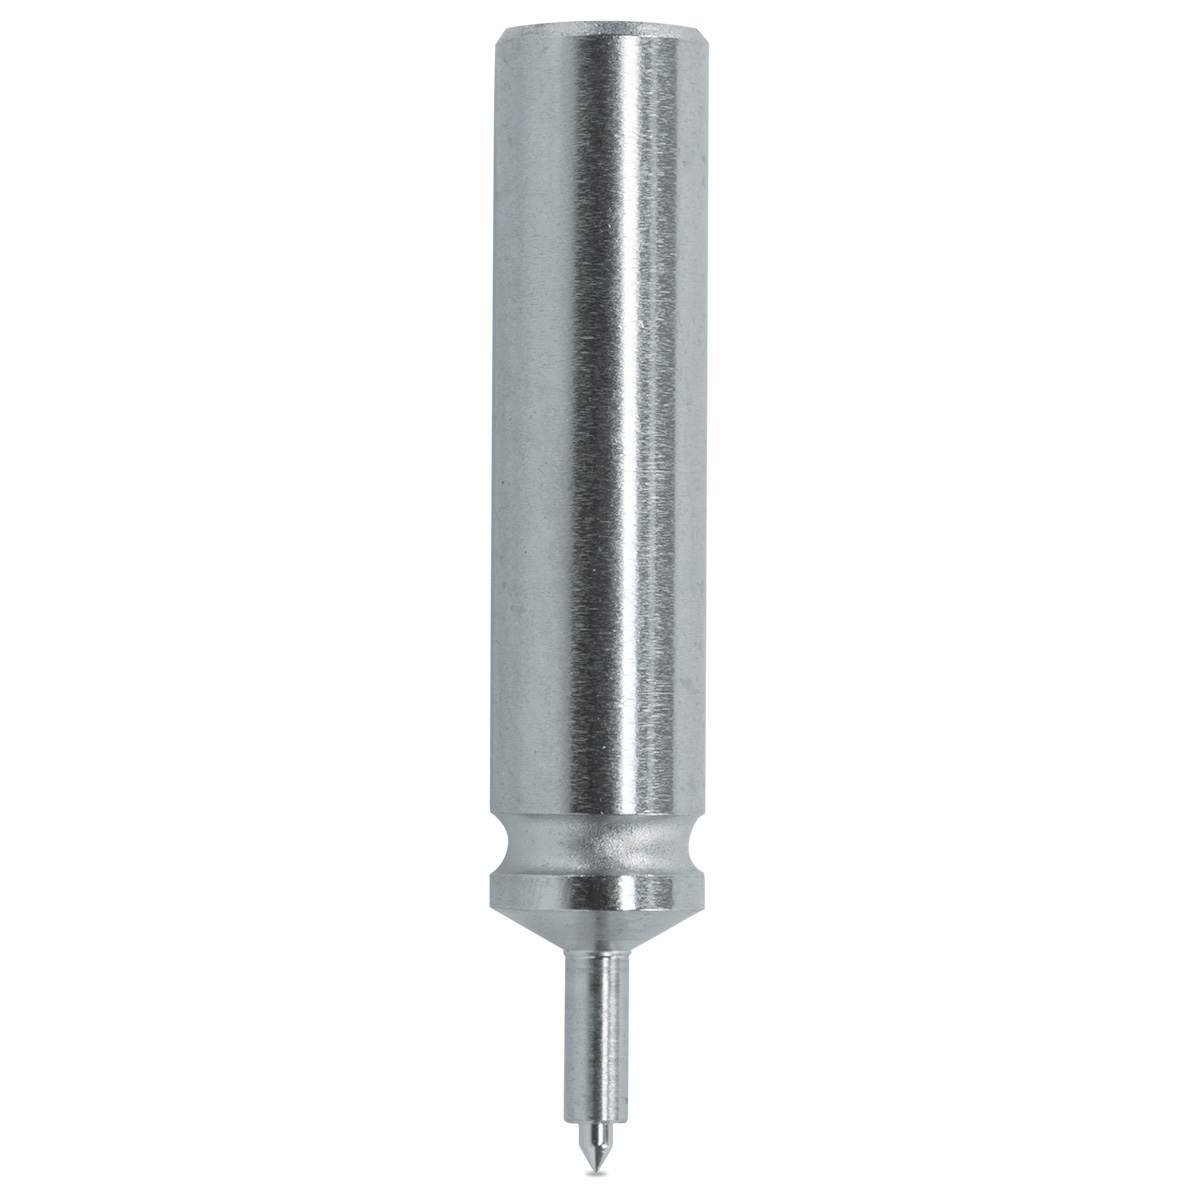 Pump pusher Horia 1000-03 N° 90, Ø body 3 mm, Ø tip 0,5 mm, support Ø 0,85 mm